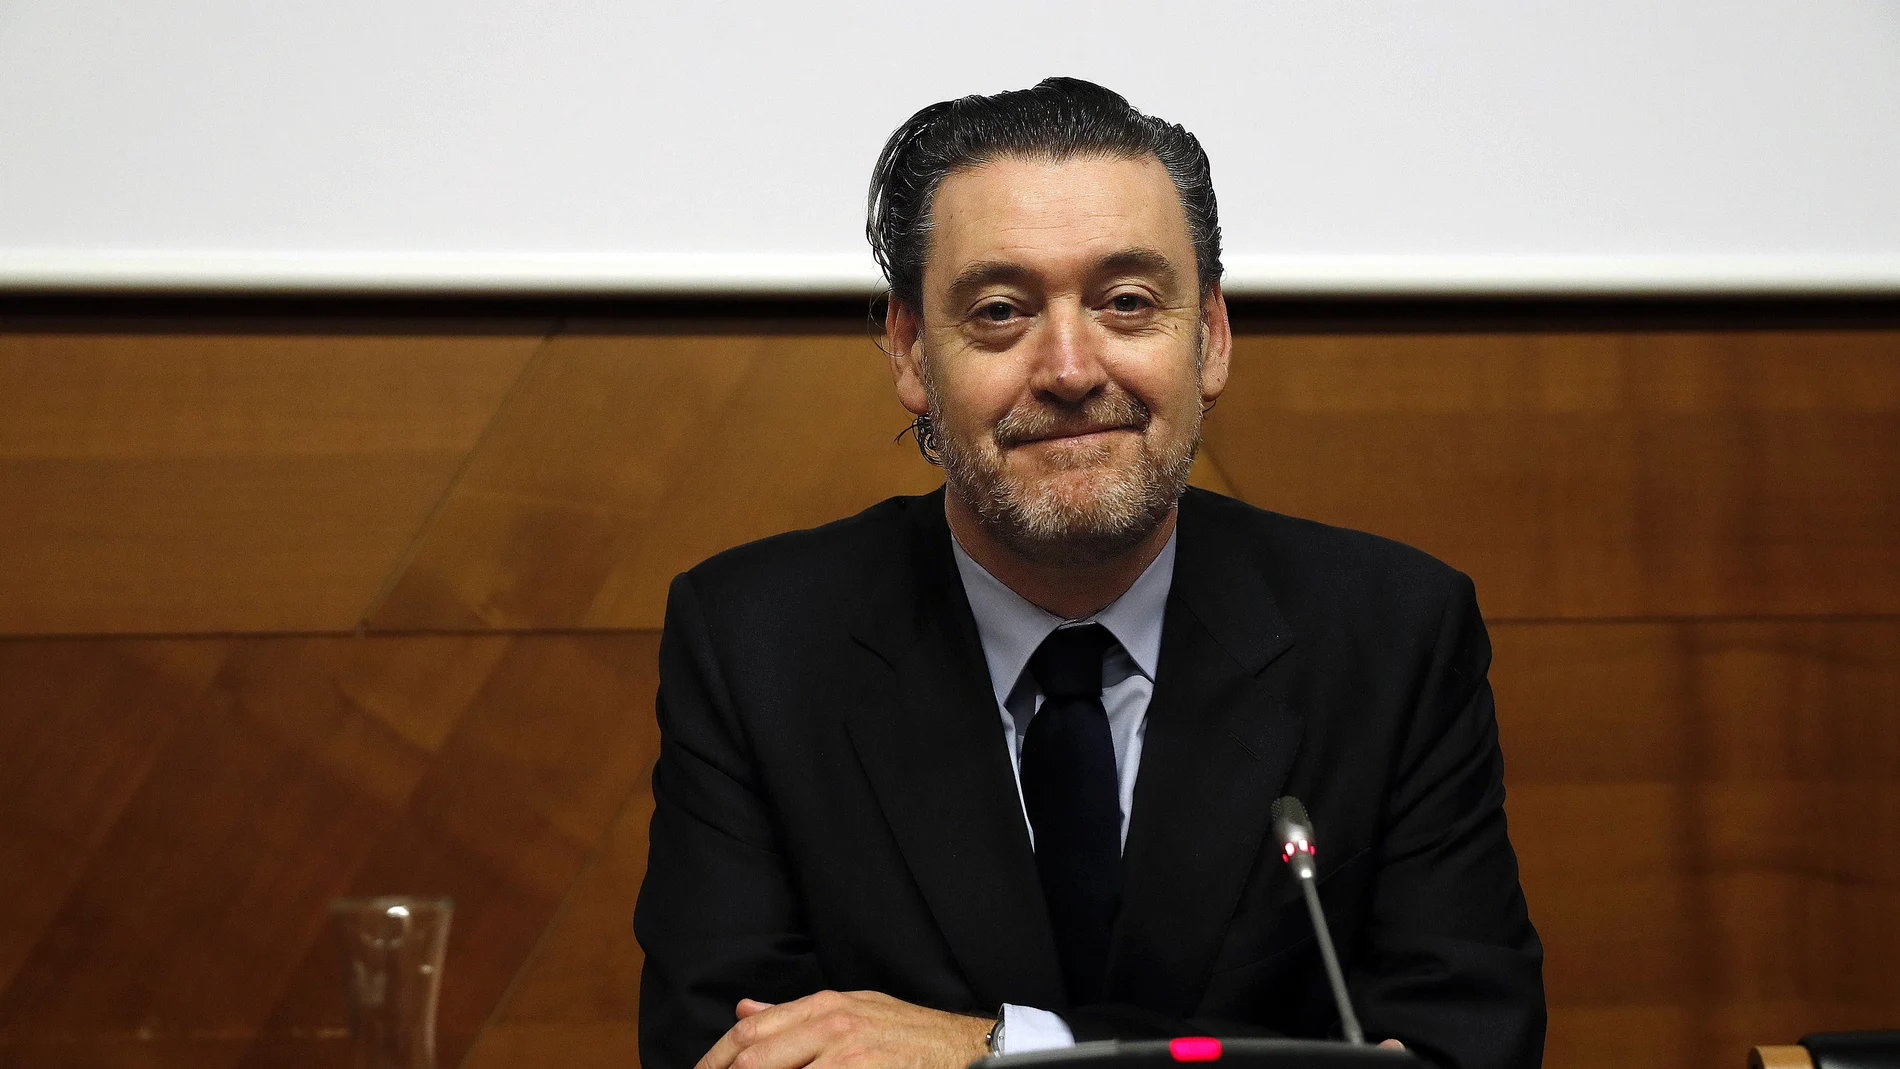 Miguel Zugaza, exdirector del Museo del Prado